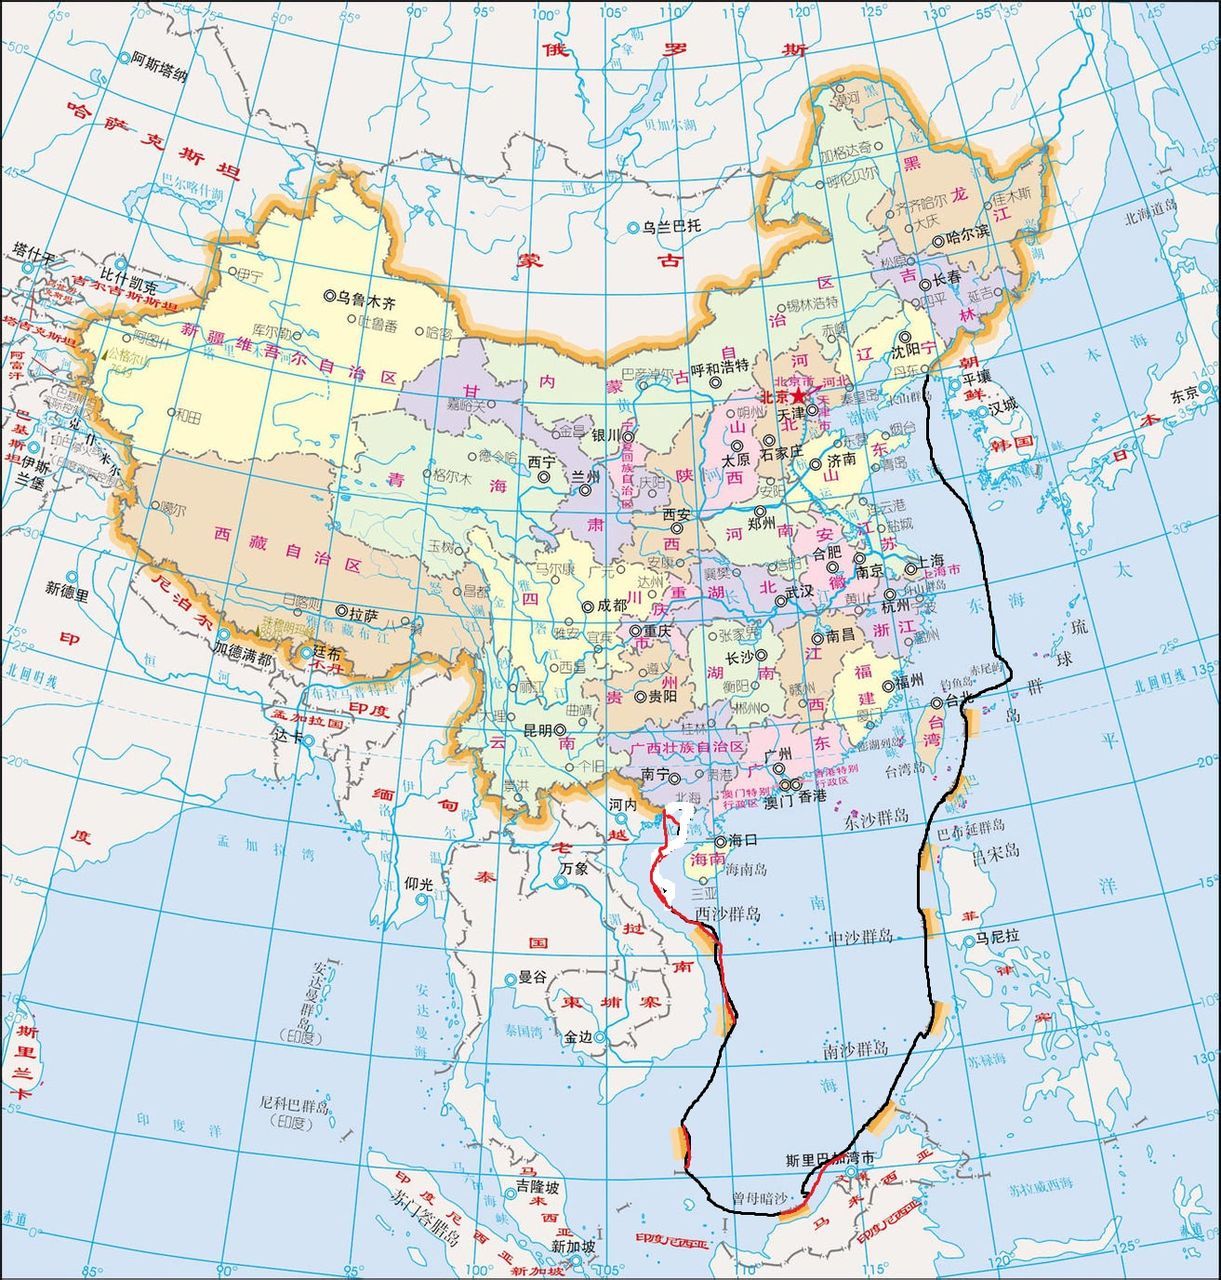 中国海岸线地图 清晰图片